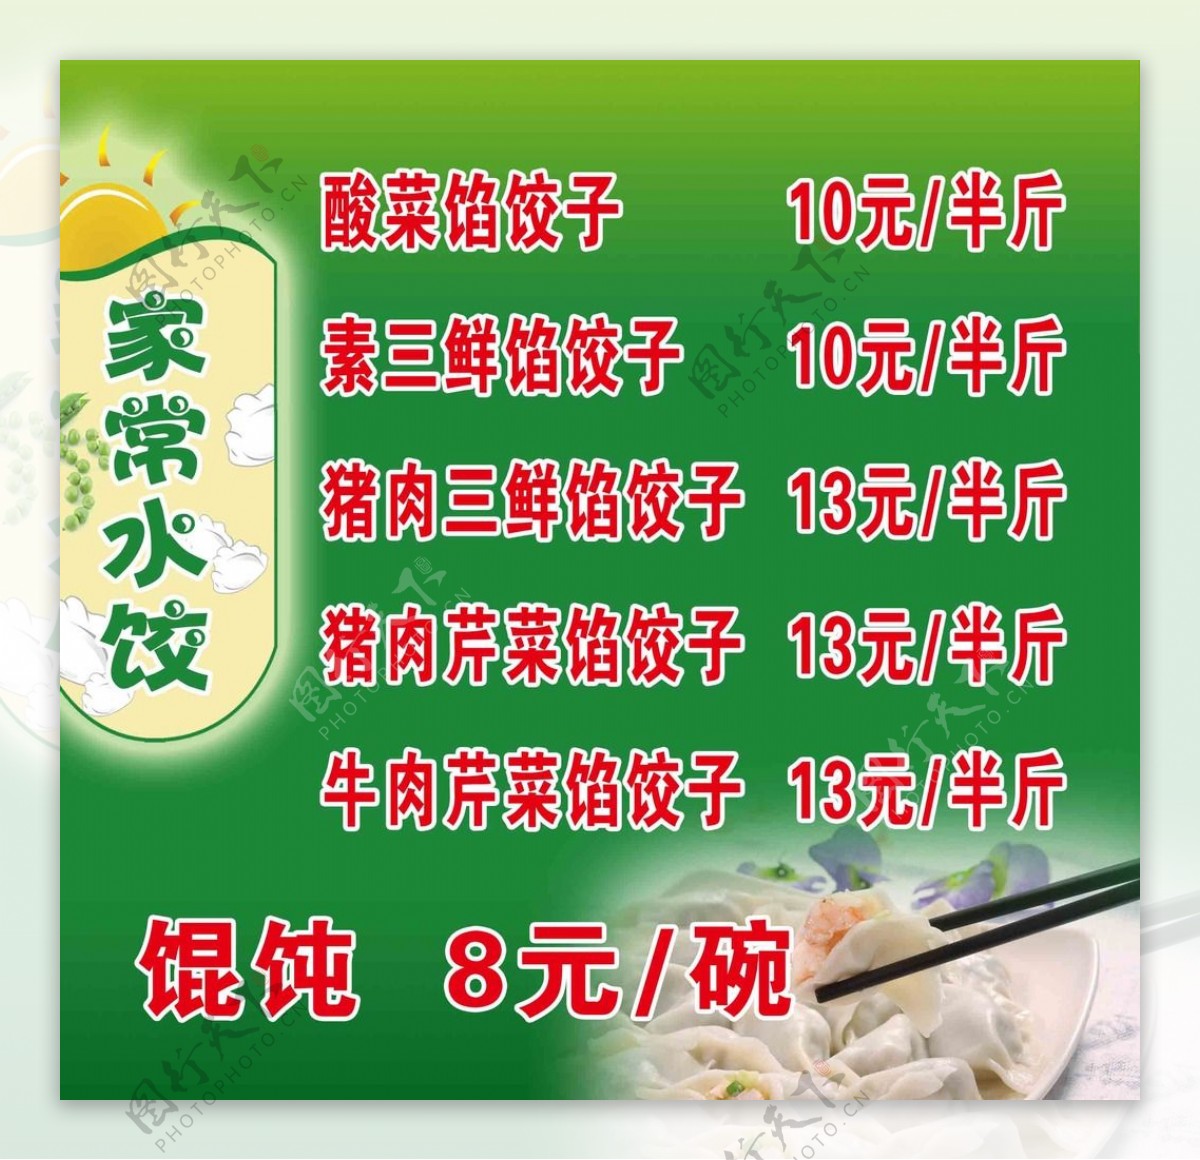 水饺菜谱图片